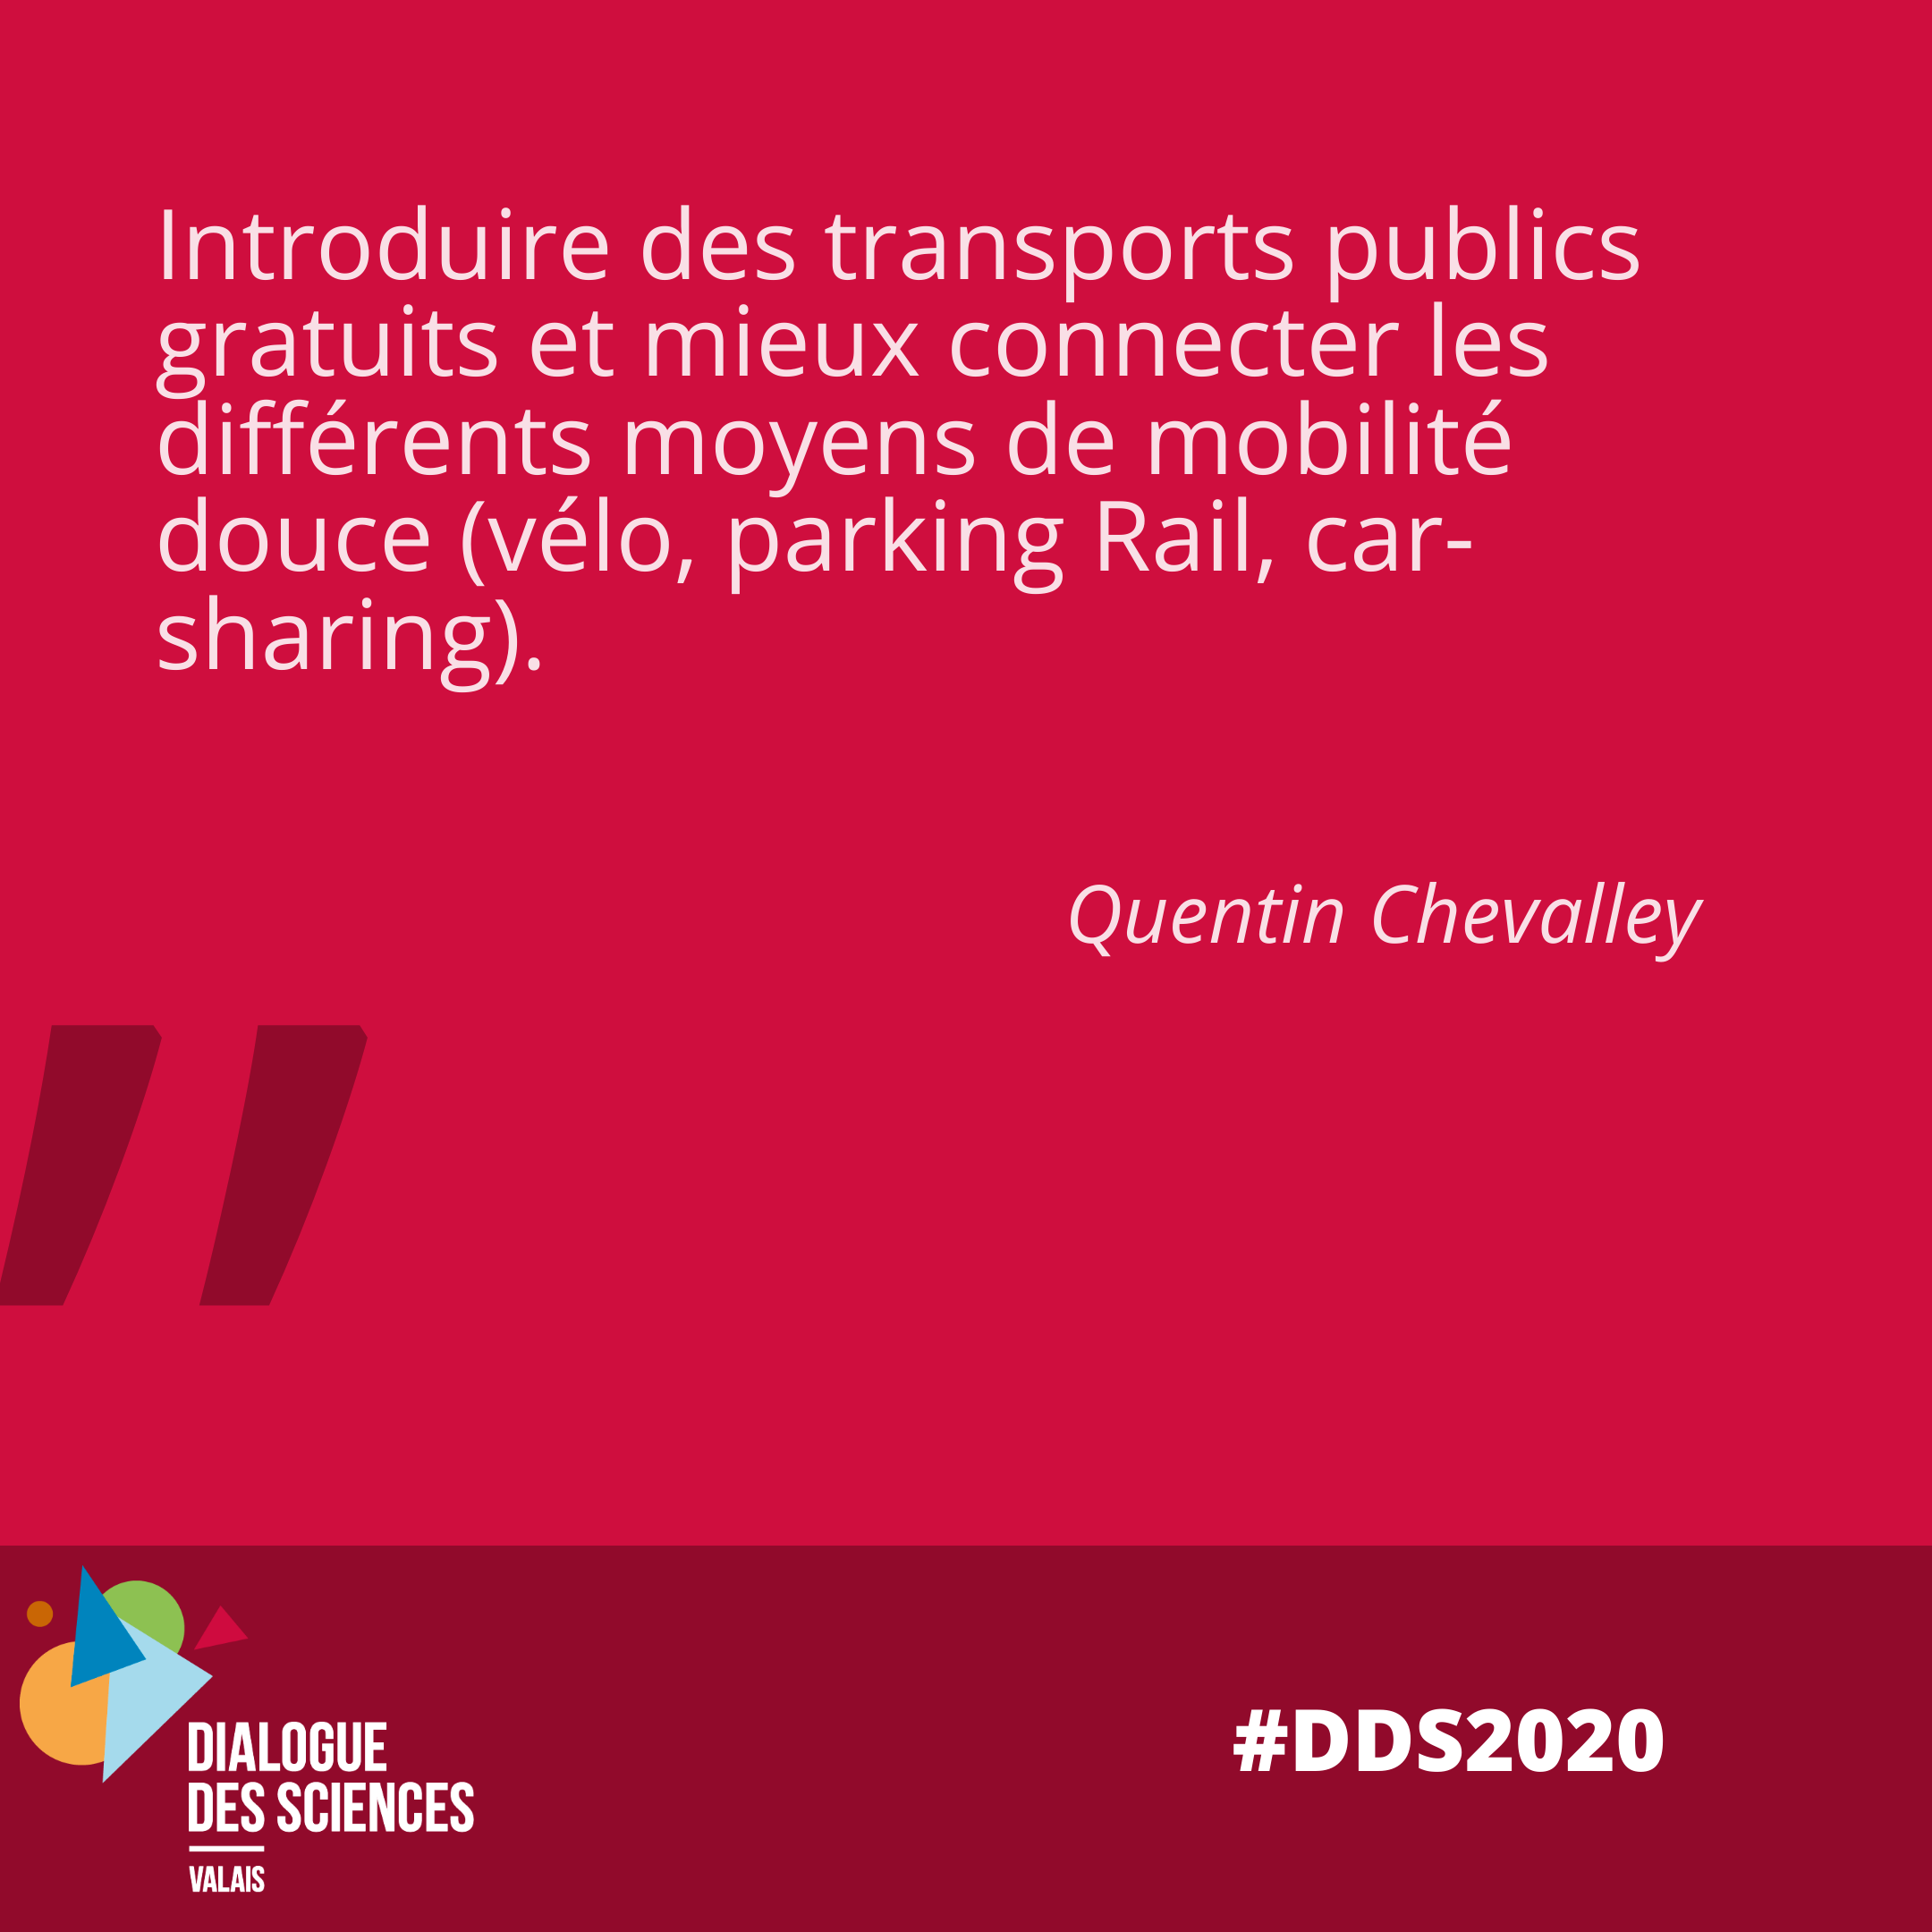 Introduire des transports publics gratuits et mieux connecter les différents moyens de mobilité douce (vélo, parking Rail, car-sharing).